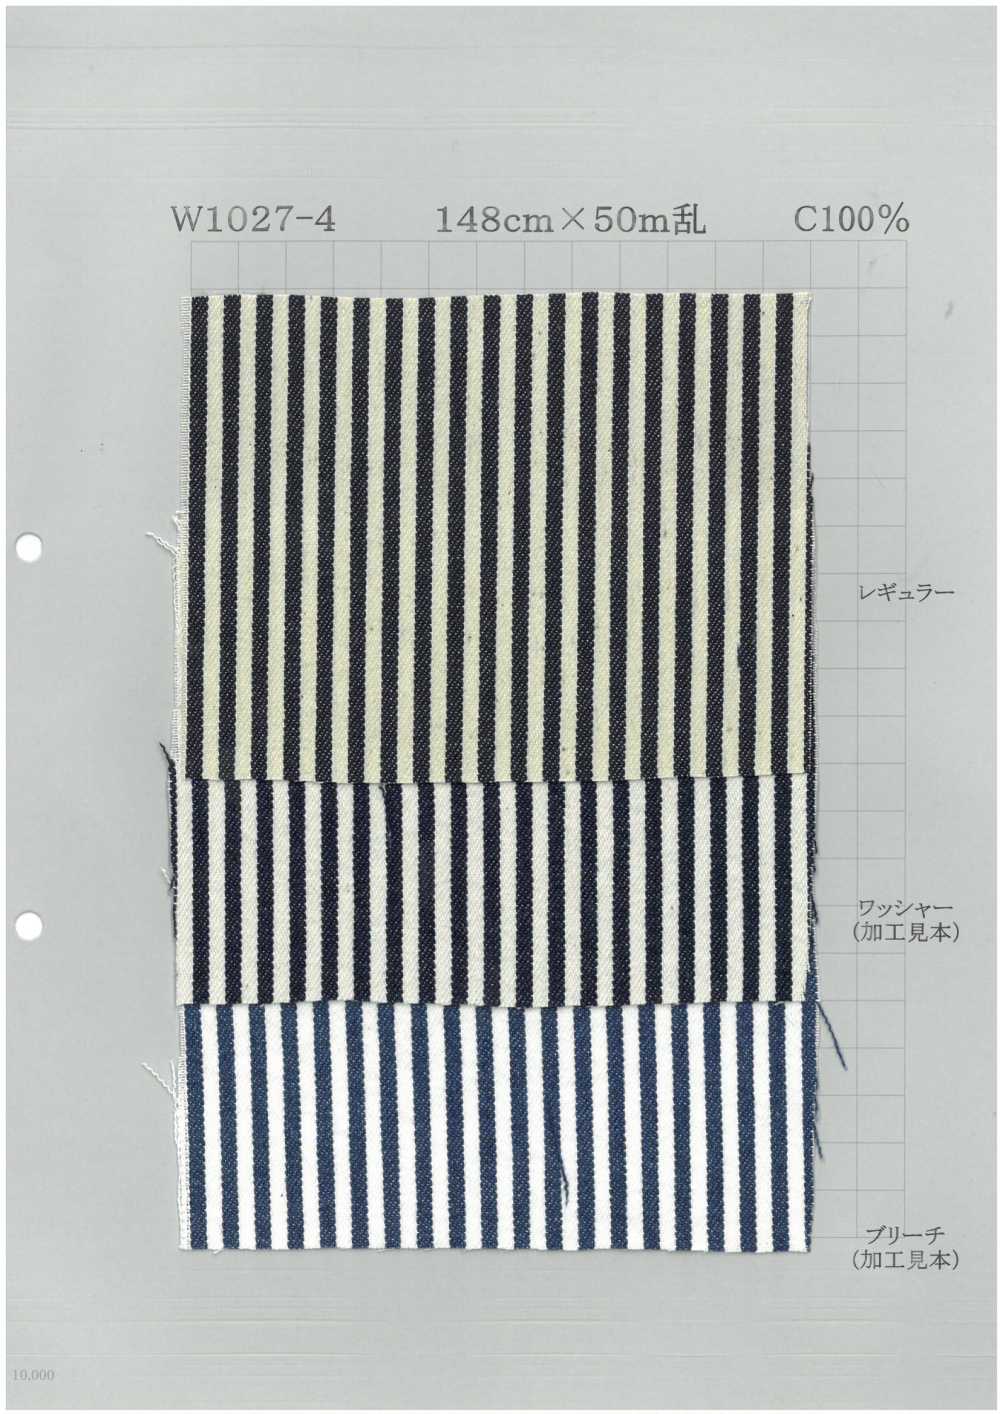 W1027-4 Denim De Algodón Con Rayas Llamativas[Fabrica Textil] Textil Yoshiwa